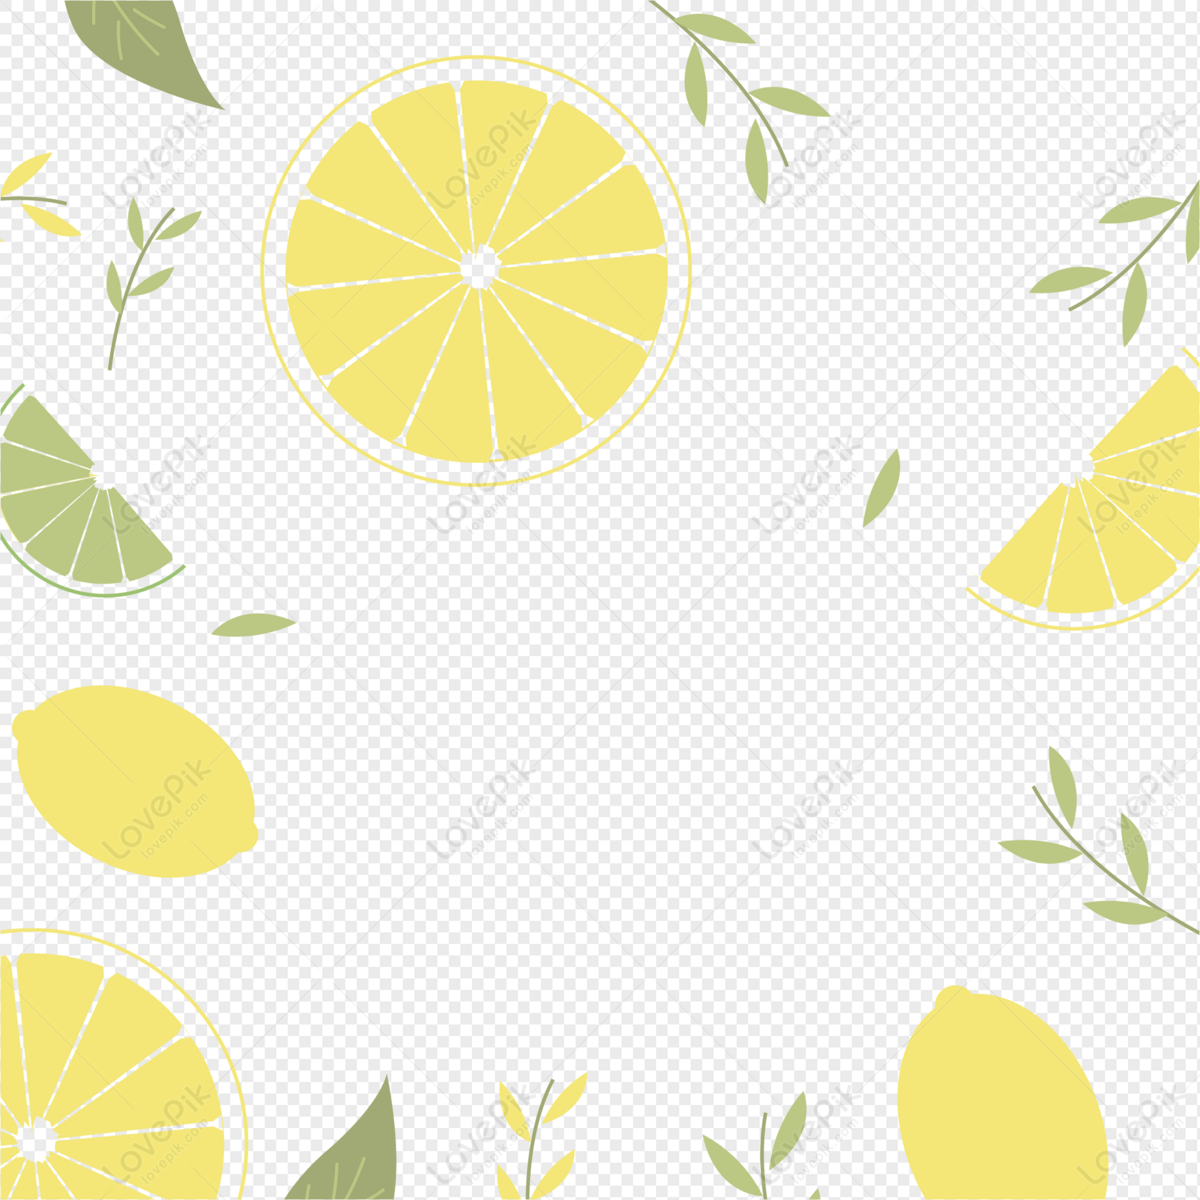 Lemon nền trang trí là một lựa chọn tuyệt vời cho những ai yêu thích đơn giản và tinh tế. Với những quả chanh tươi sáng, nó sẽ mang đến cho căn phòng của bạn một không gian sống động và đầy sức sống.